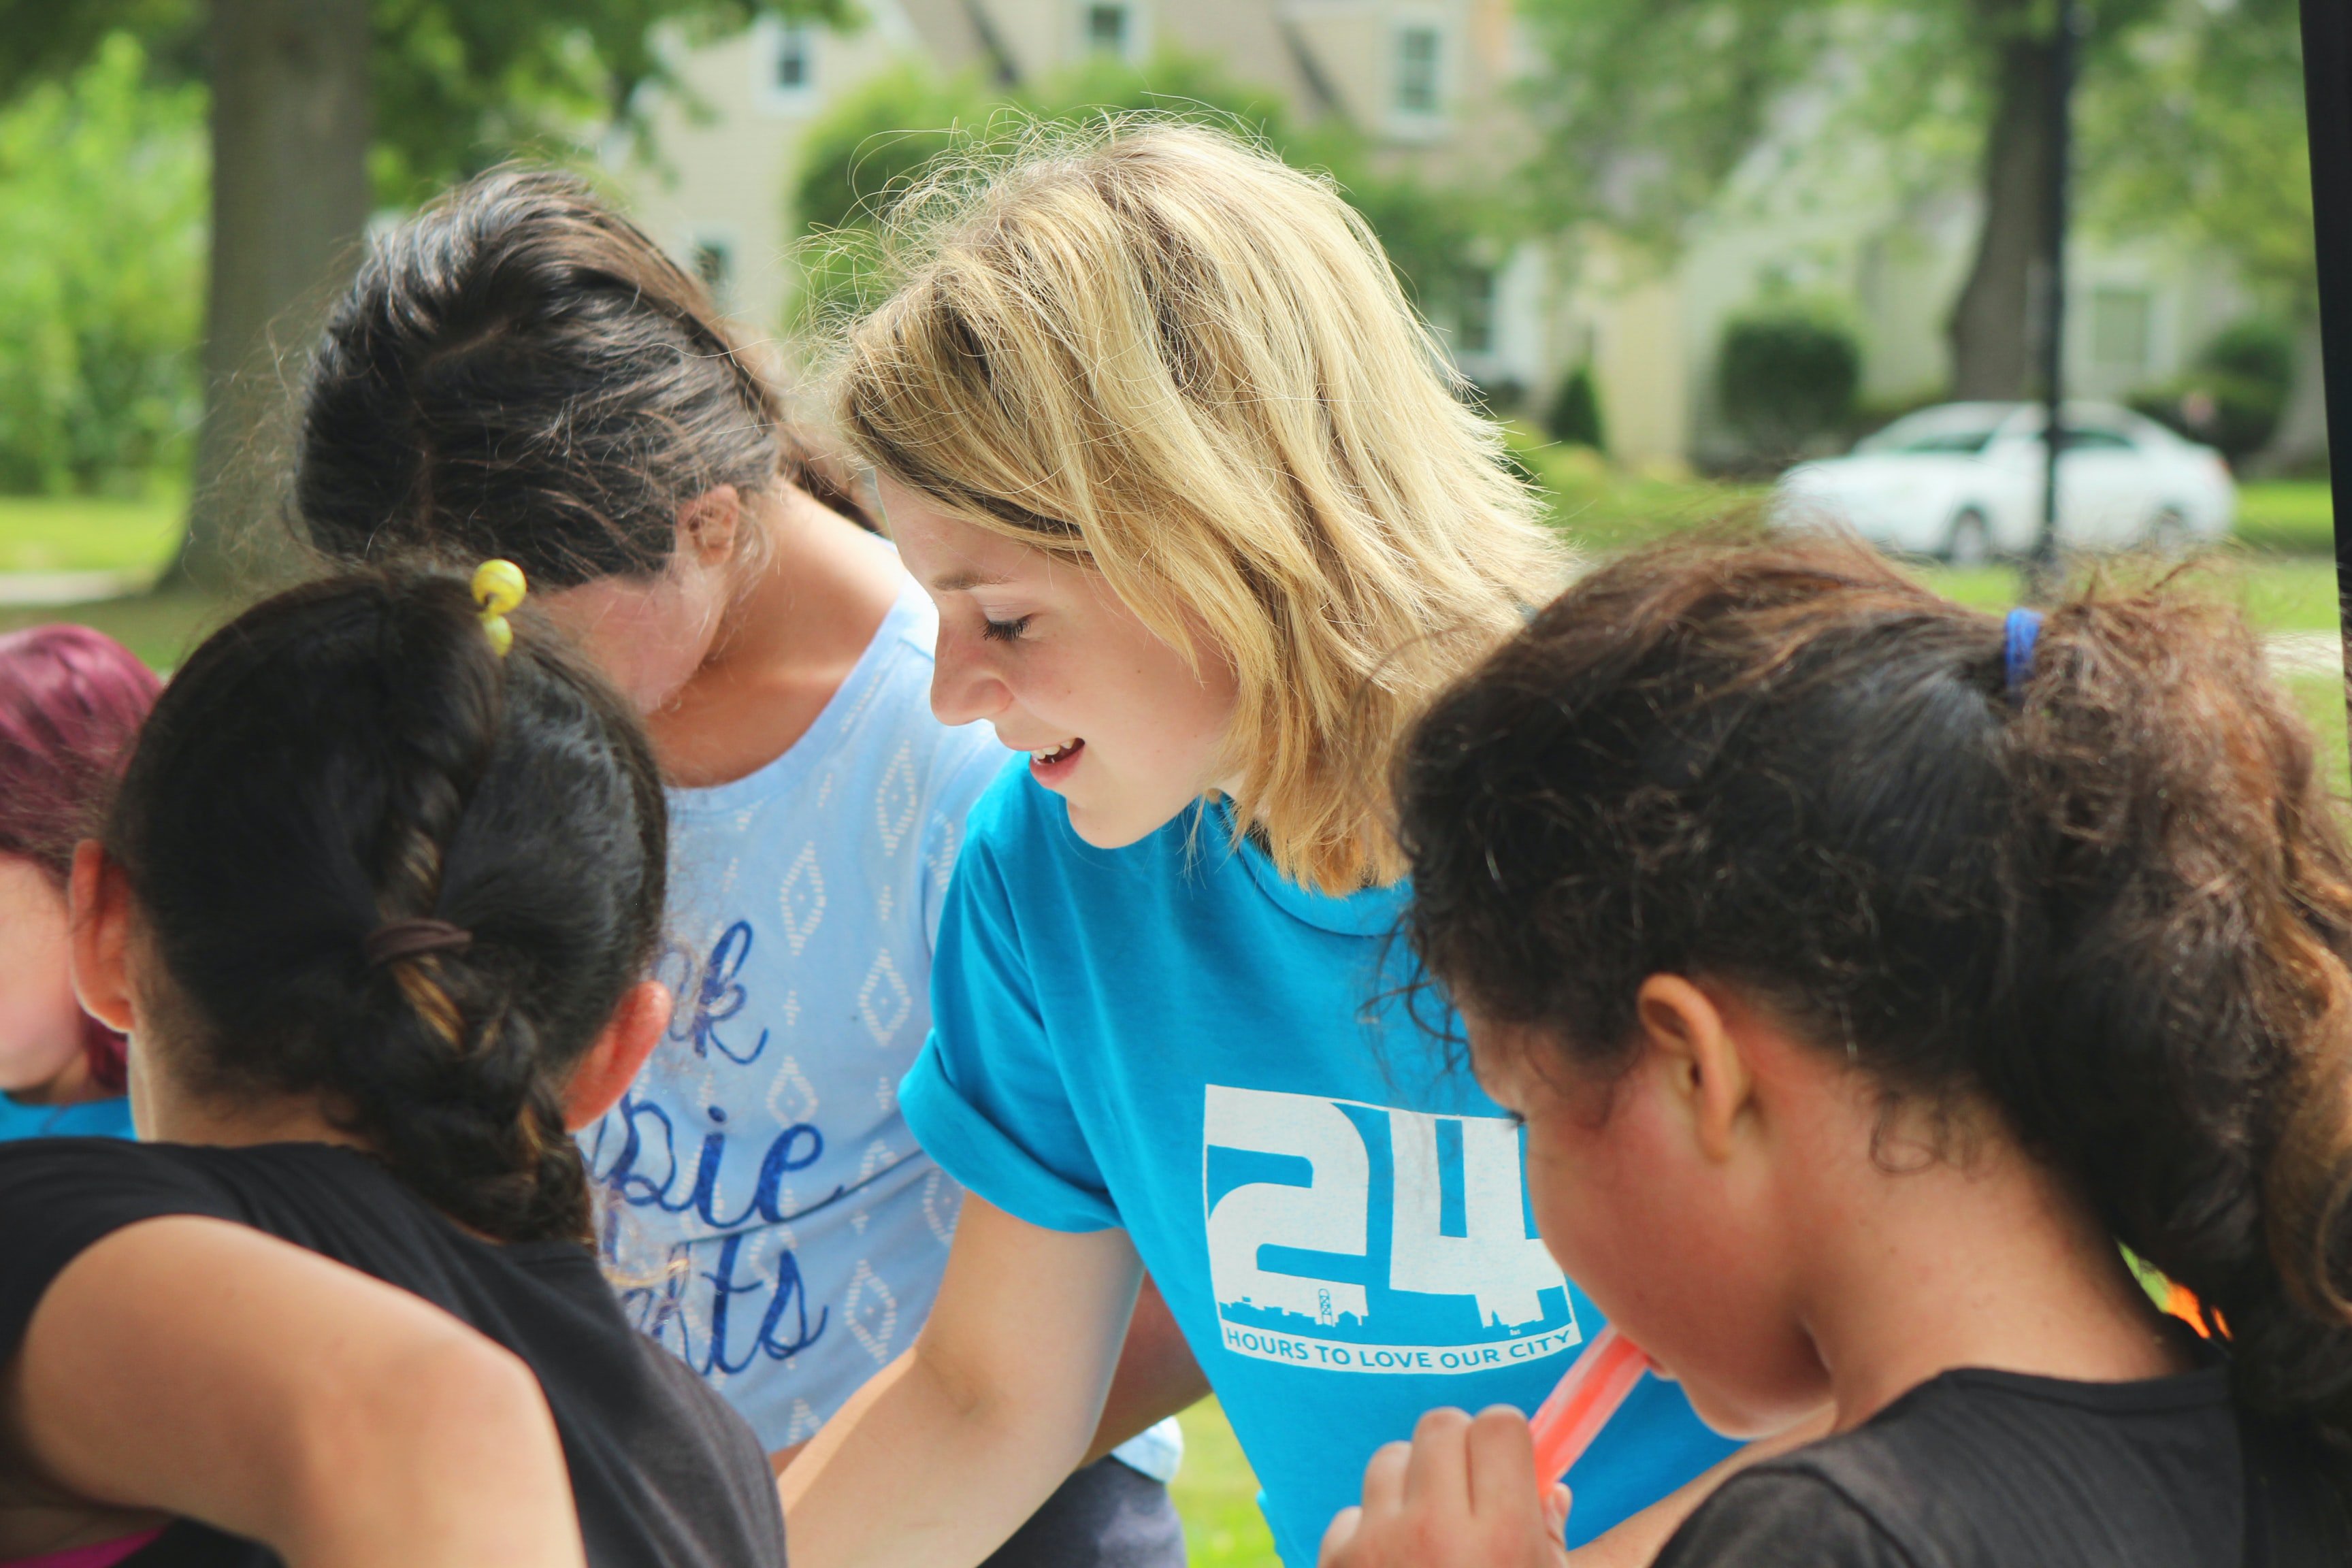 Blonde woman in blue shirt volunteering around children